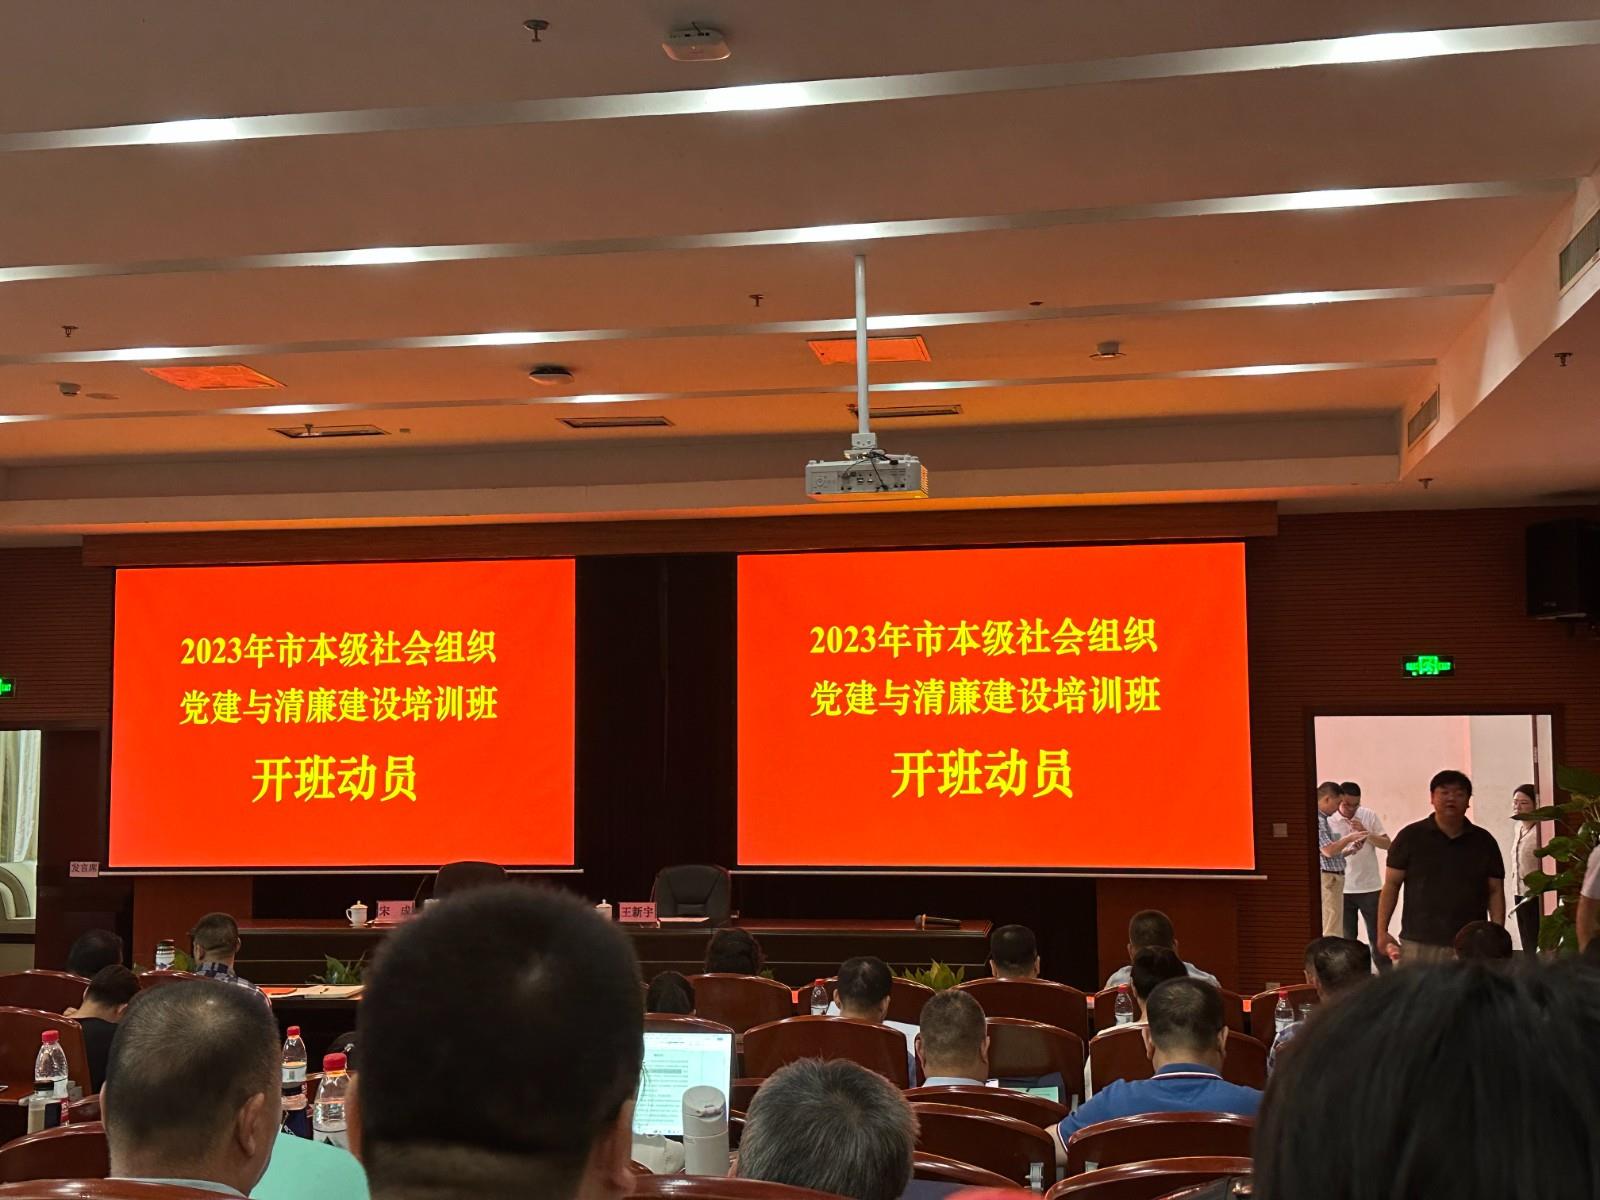 8 月 28 日-8 月 30 日，秘书处参加了由杭州市民政局社管局和中共杭州 市委党校在杭州市委党校里举办的 2023 年市本级社会组织党建与清廉建设 培训班。